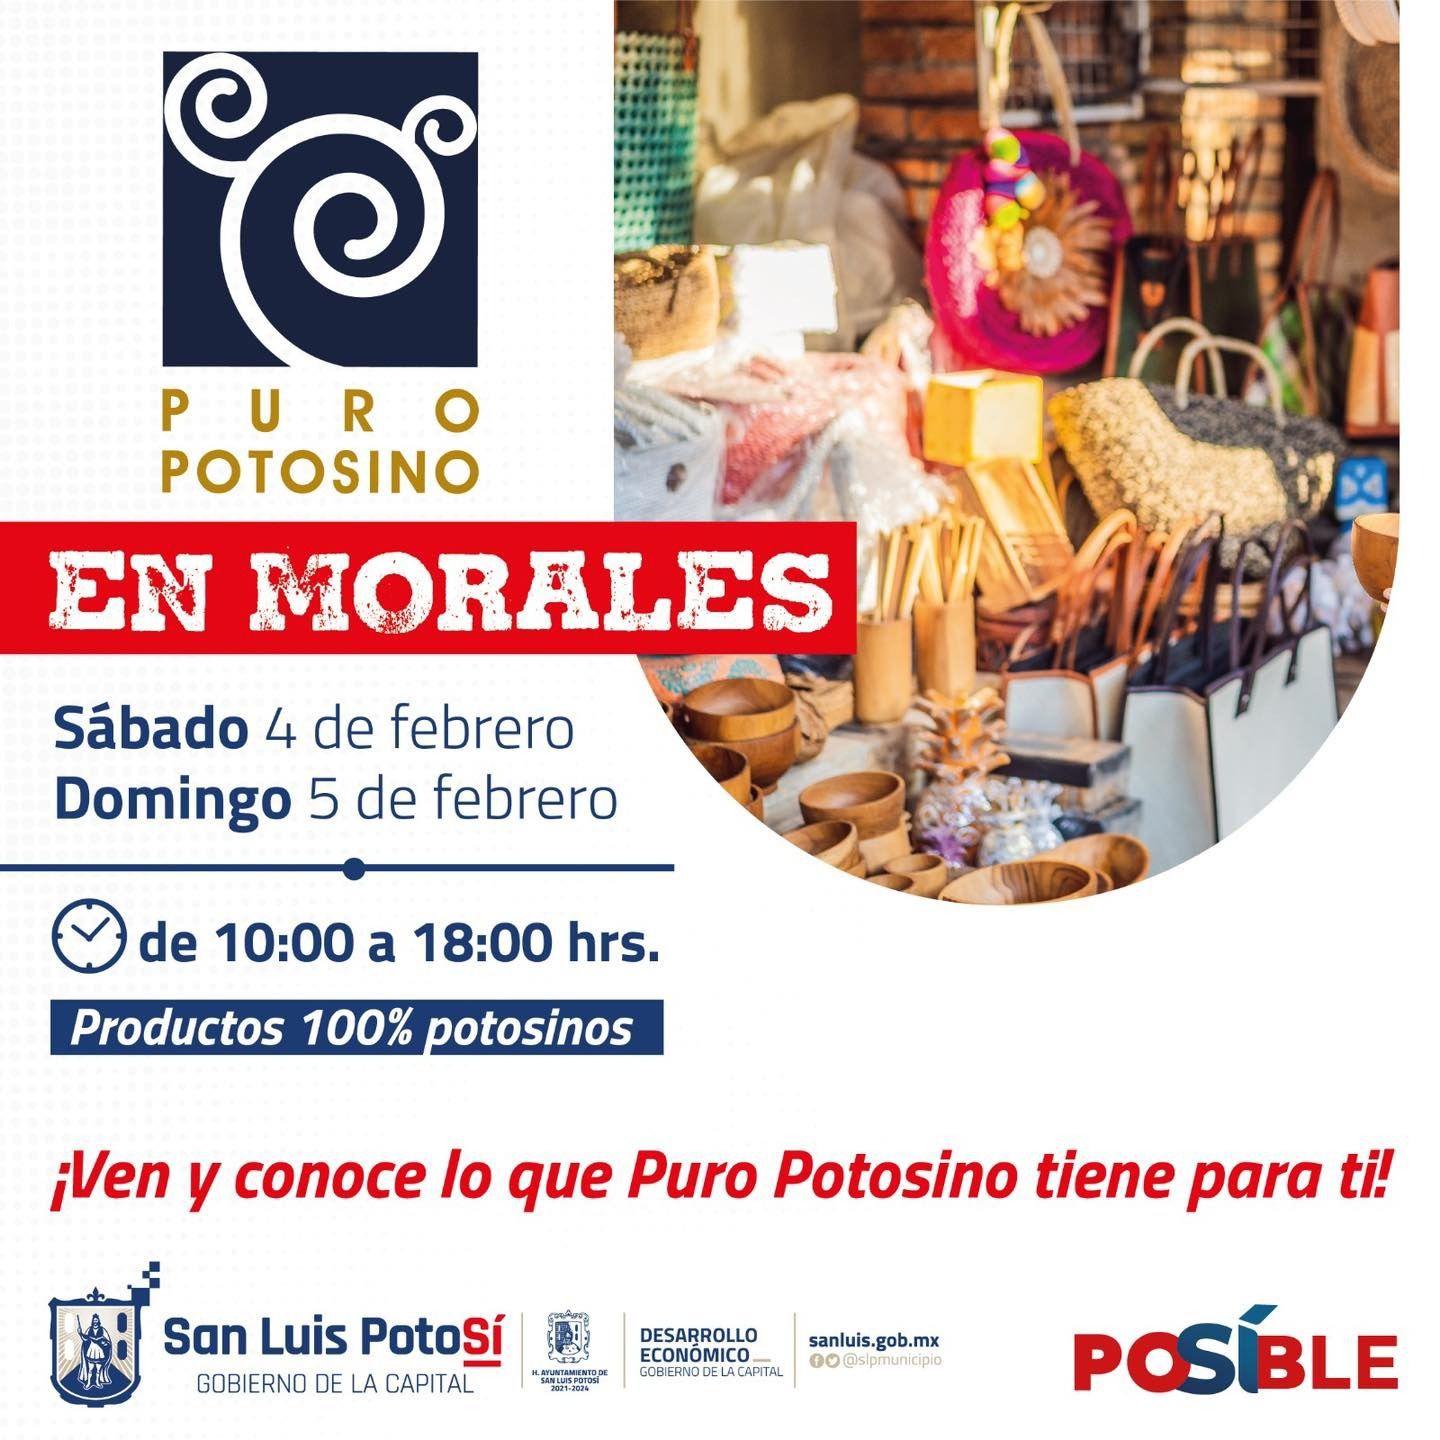 Realizarán expo venta del programa Puro Potosino en el Parque de Morales